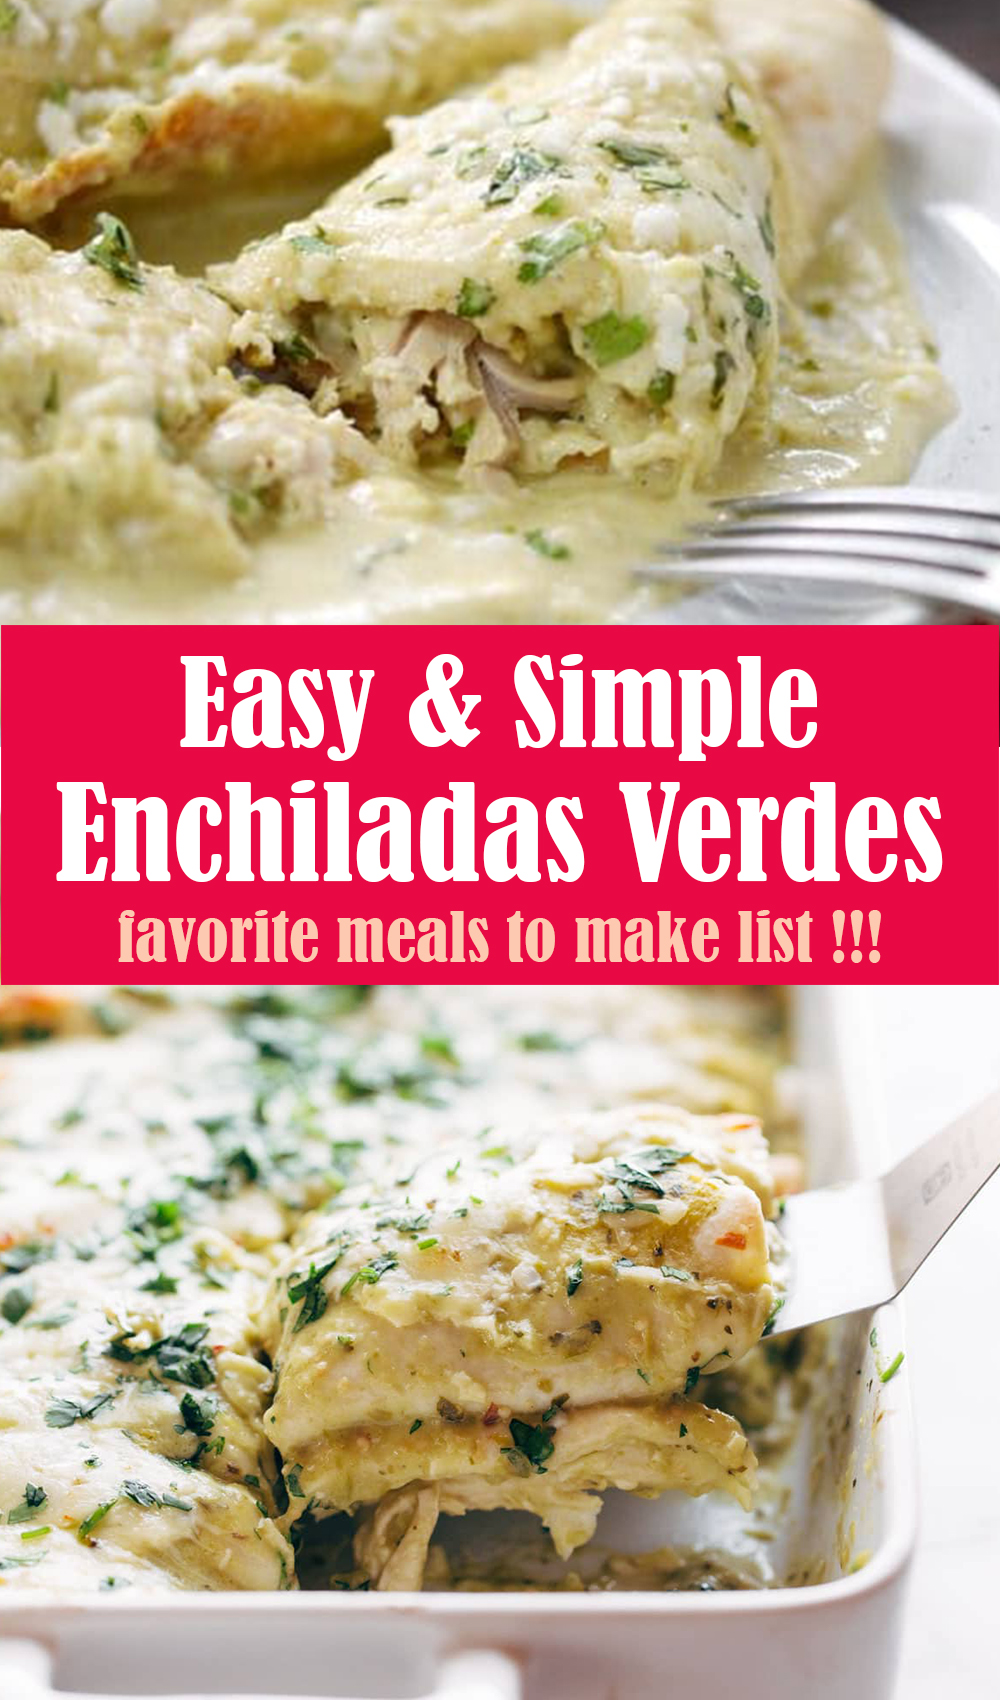 Simple Enchiladas Verdes Recipe